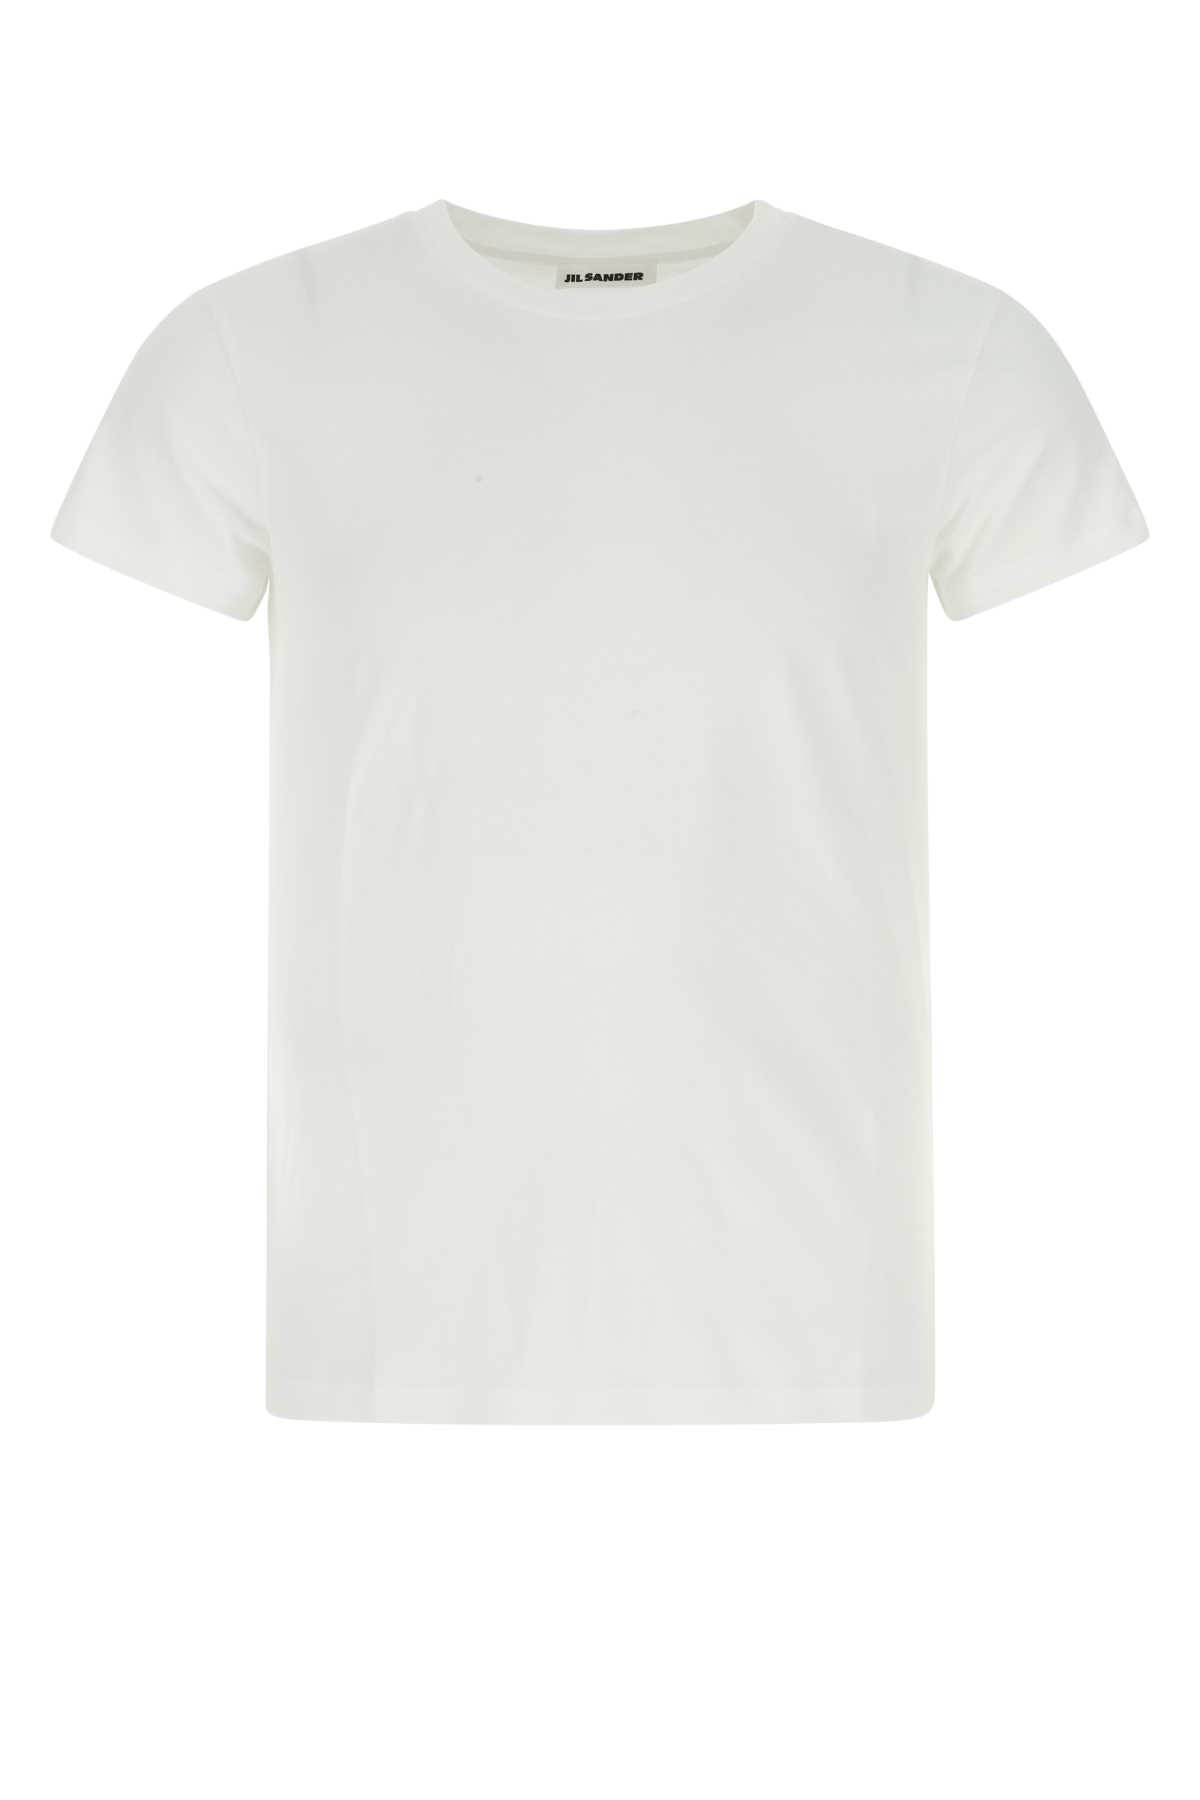 Shop Jil Sander White Cotton T-shirt In 100